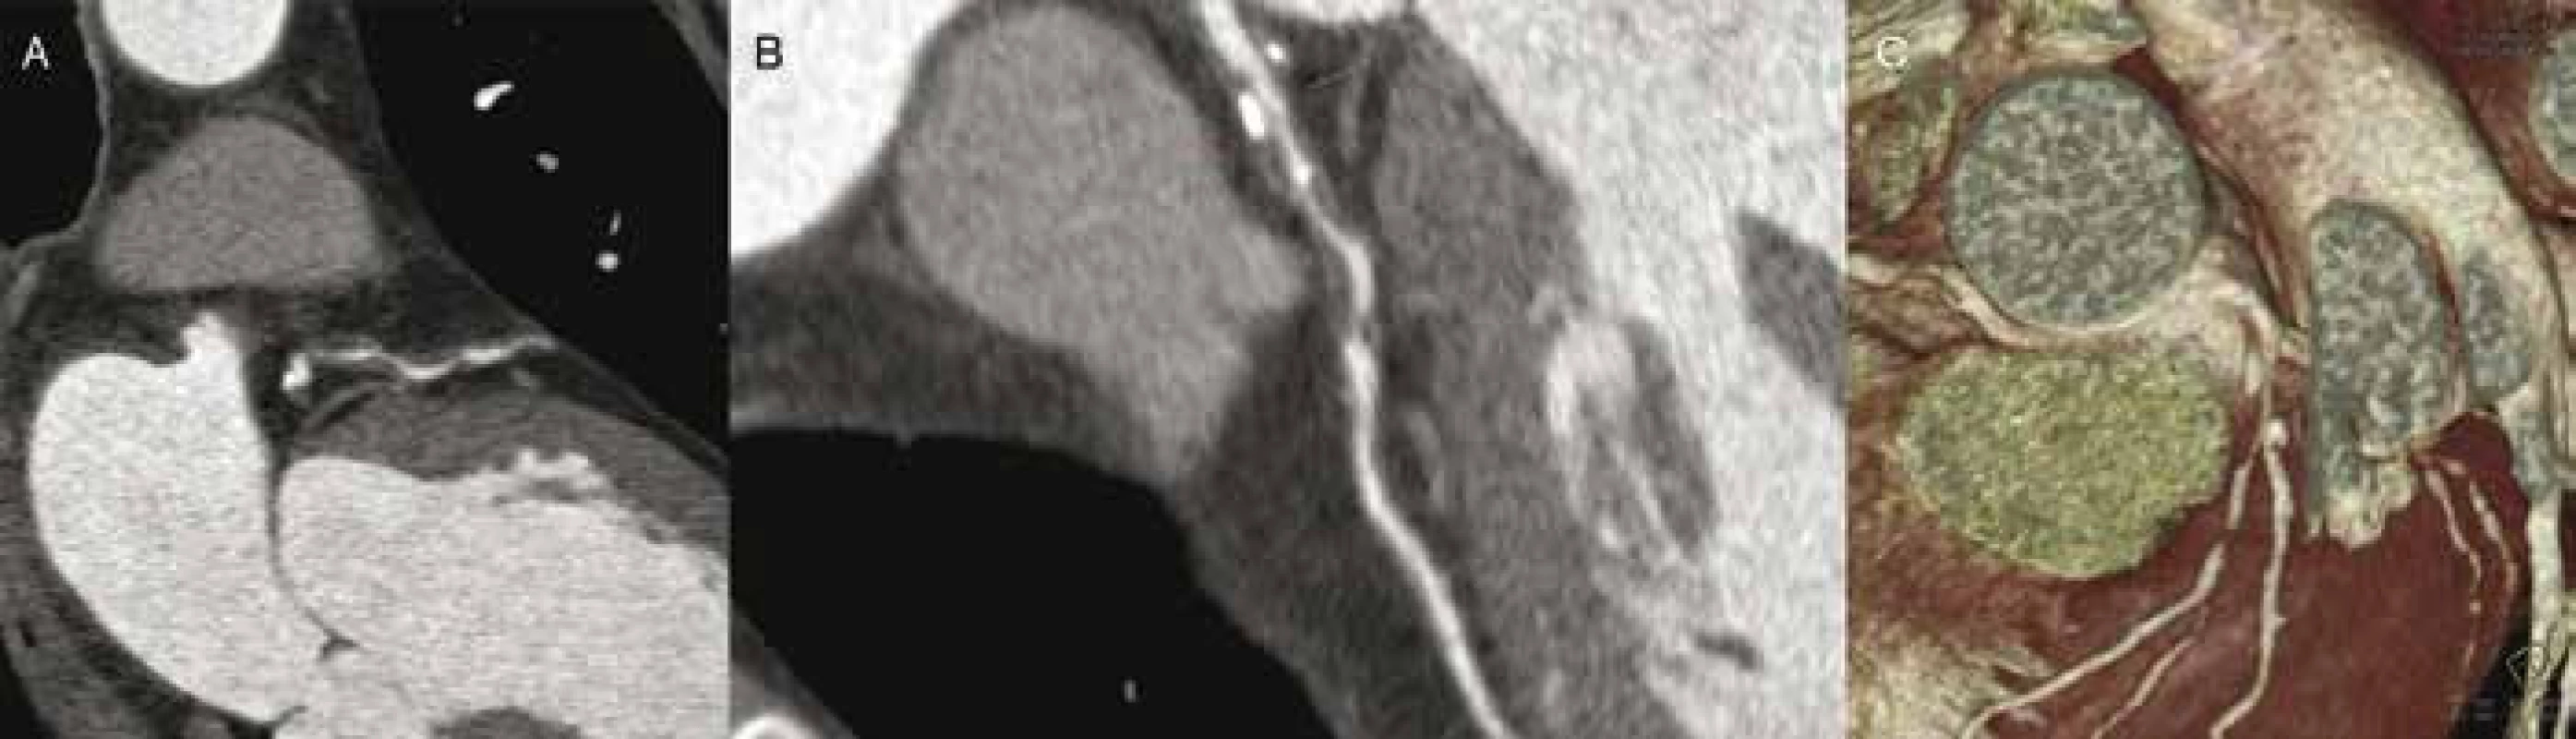 CT angiografie: rozsáhlé postižení proximální a střední třetiny RIA fibrózními pláty (A–B) s několika kalcifikacemi, které způsobují až hemodynamicky významnou stenózu (C) u osoby s vysokým kardiovaskulárním rizikem bez anamnézy klinických potíží.